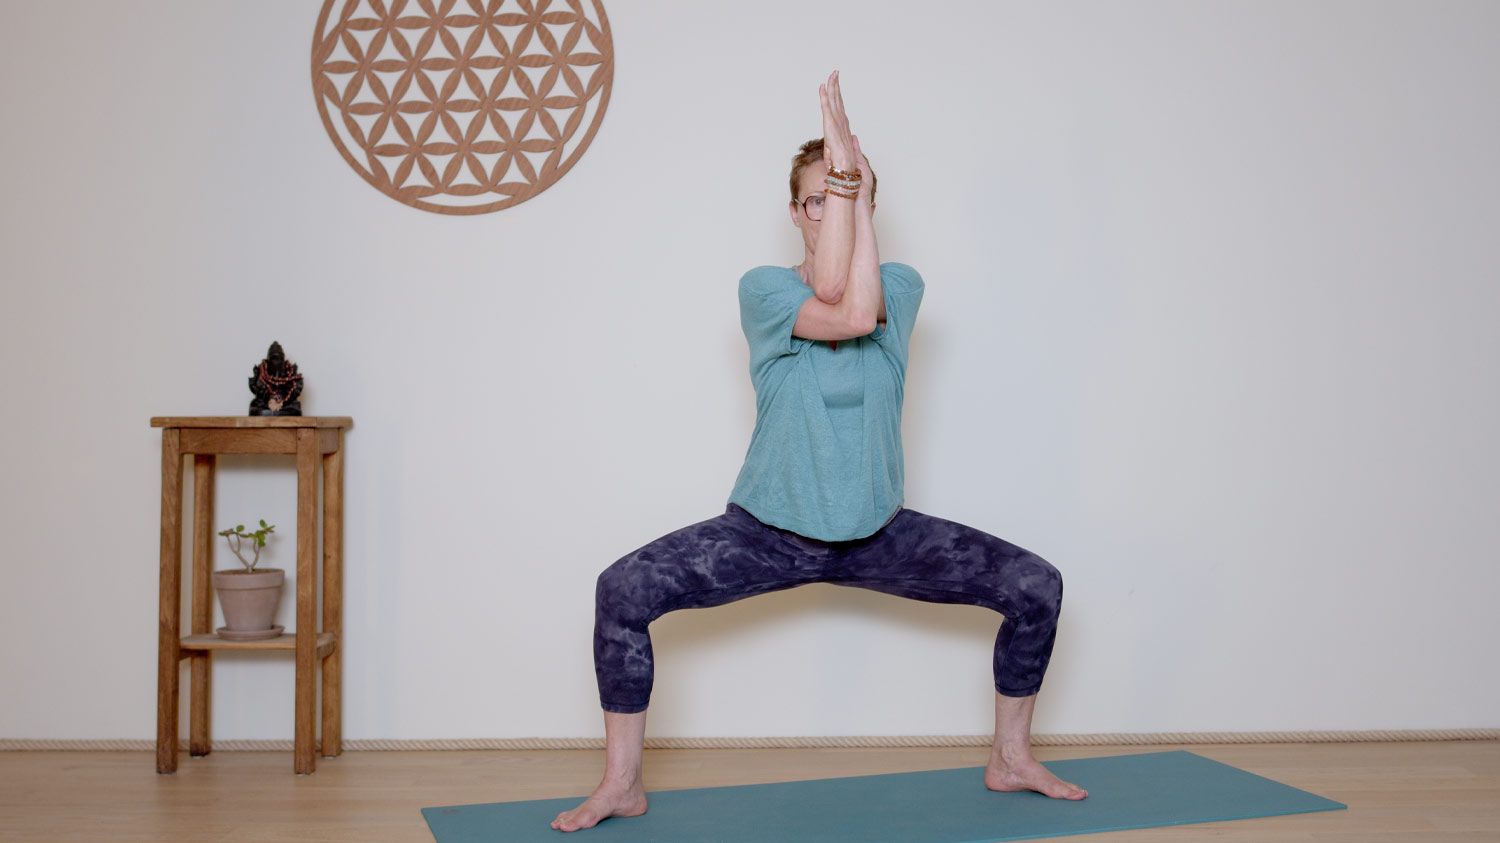 Séance complète - 45 min - Corps de joie | Cours de yoga en ligne avec Delphine Denis | Hatha Yoga dynamique, Méditation, Pranayama